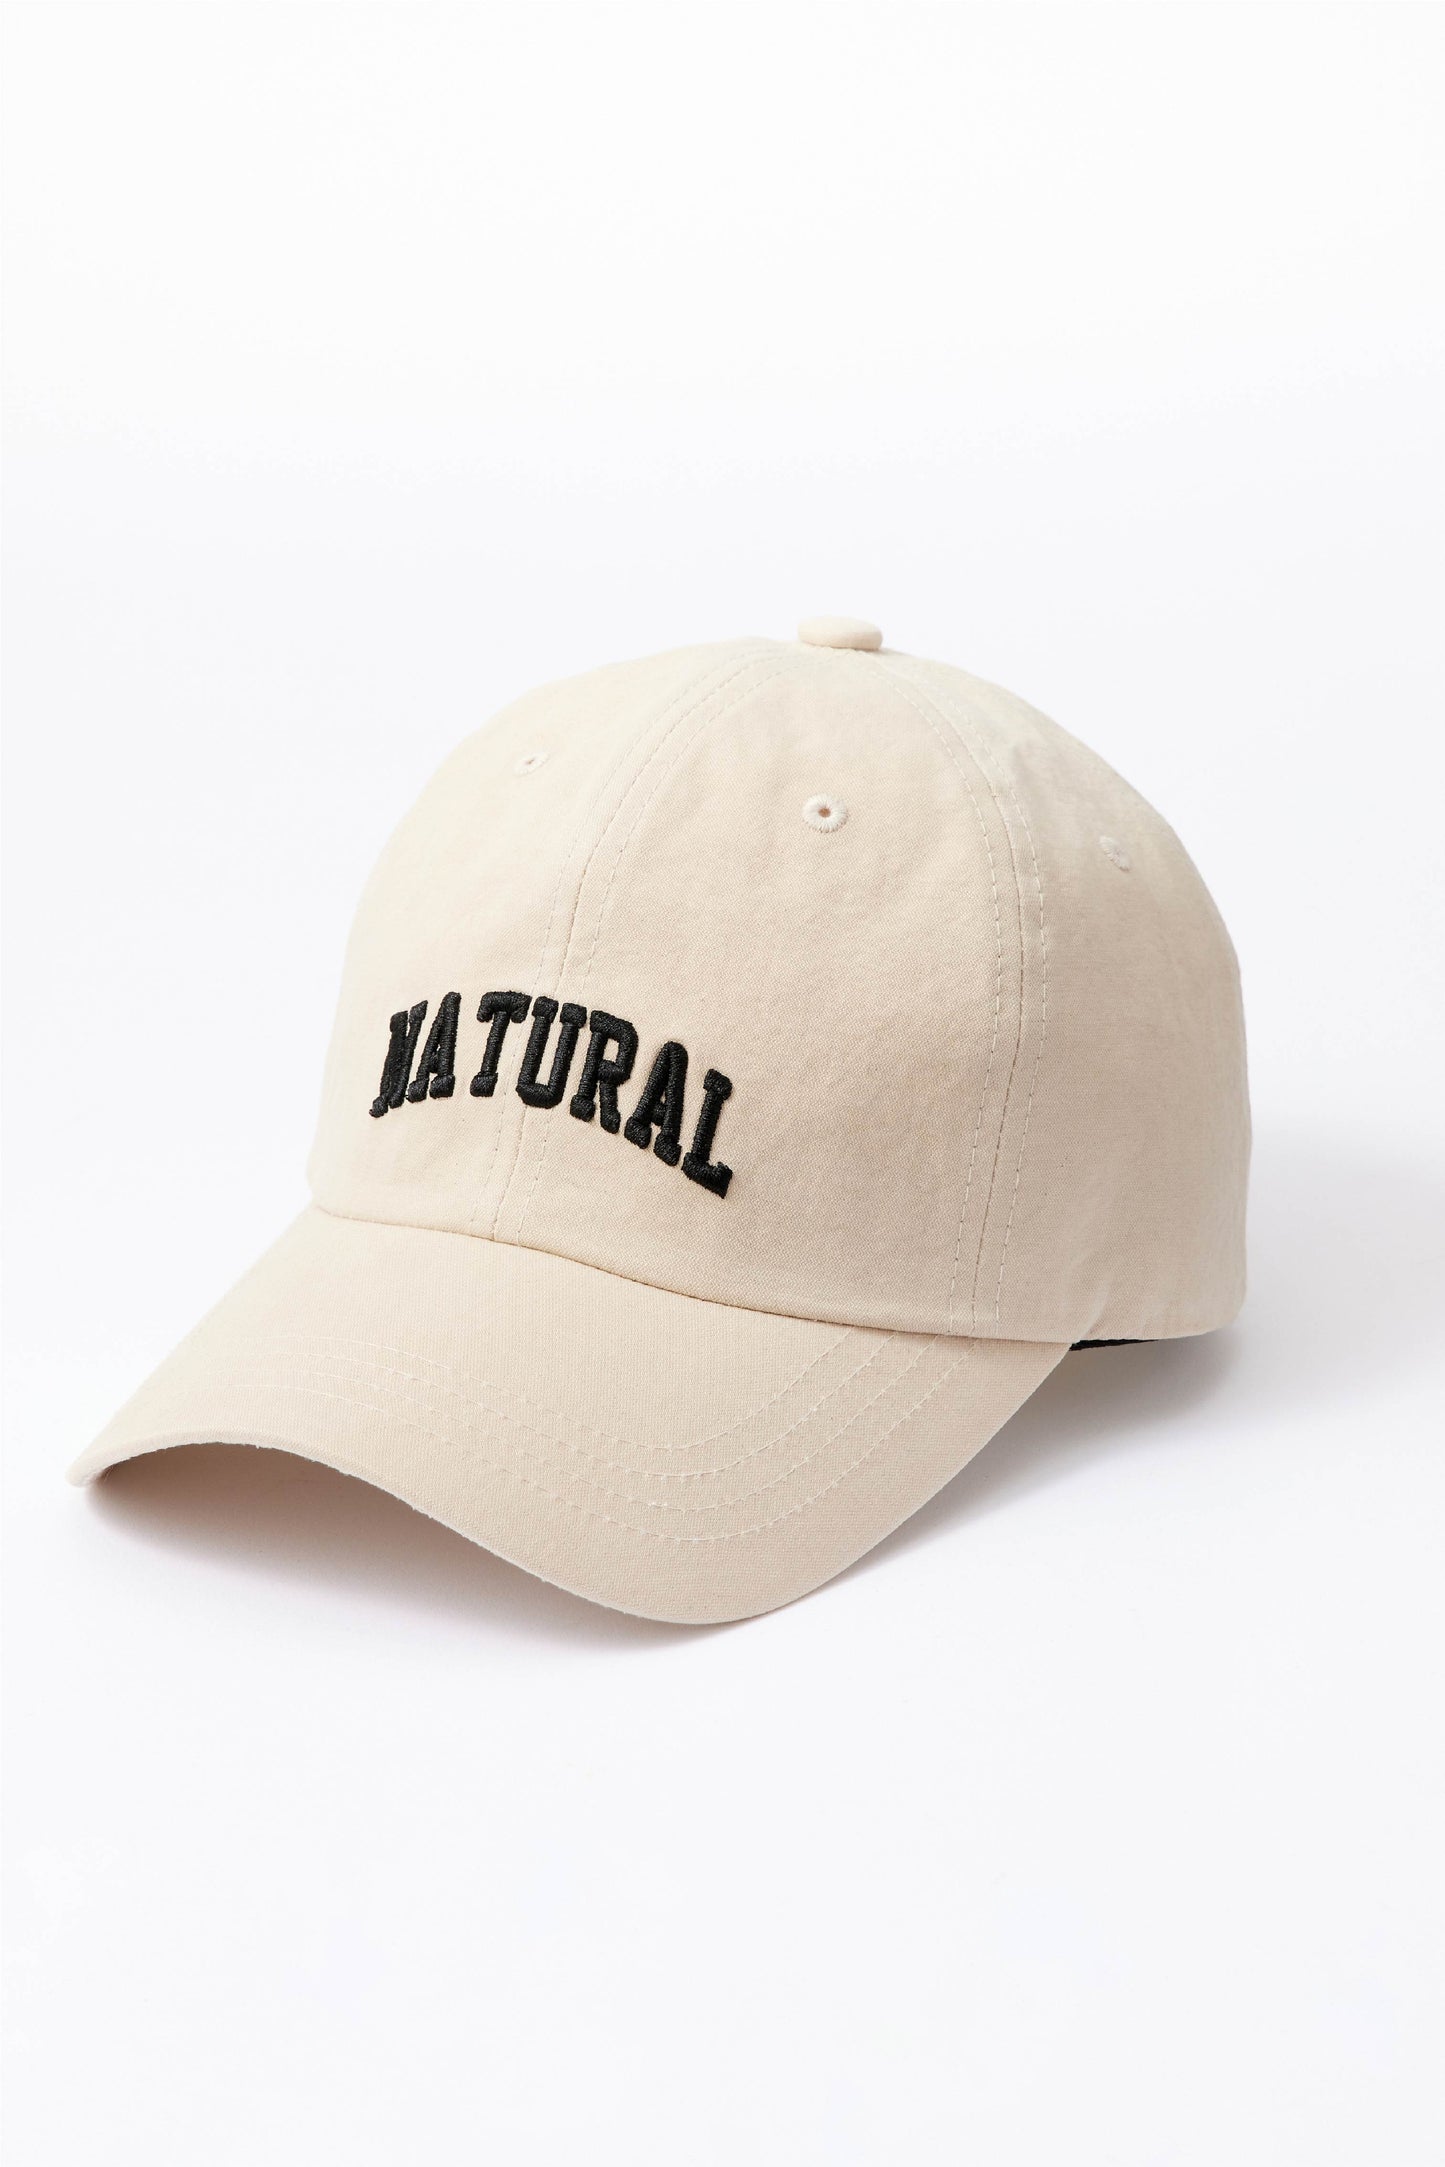 Natural cap（ナチュラル キャップ）